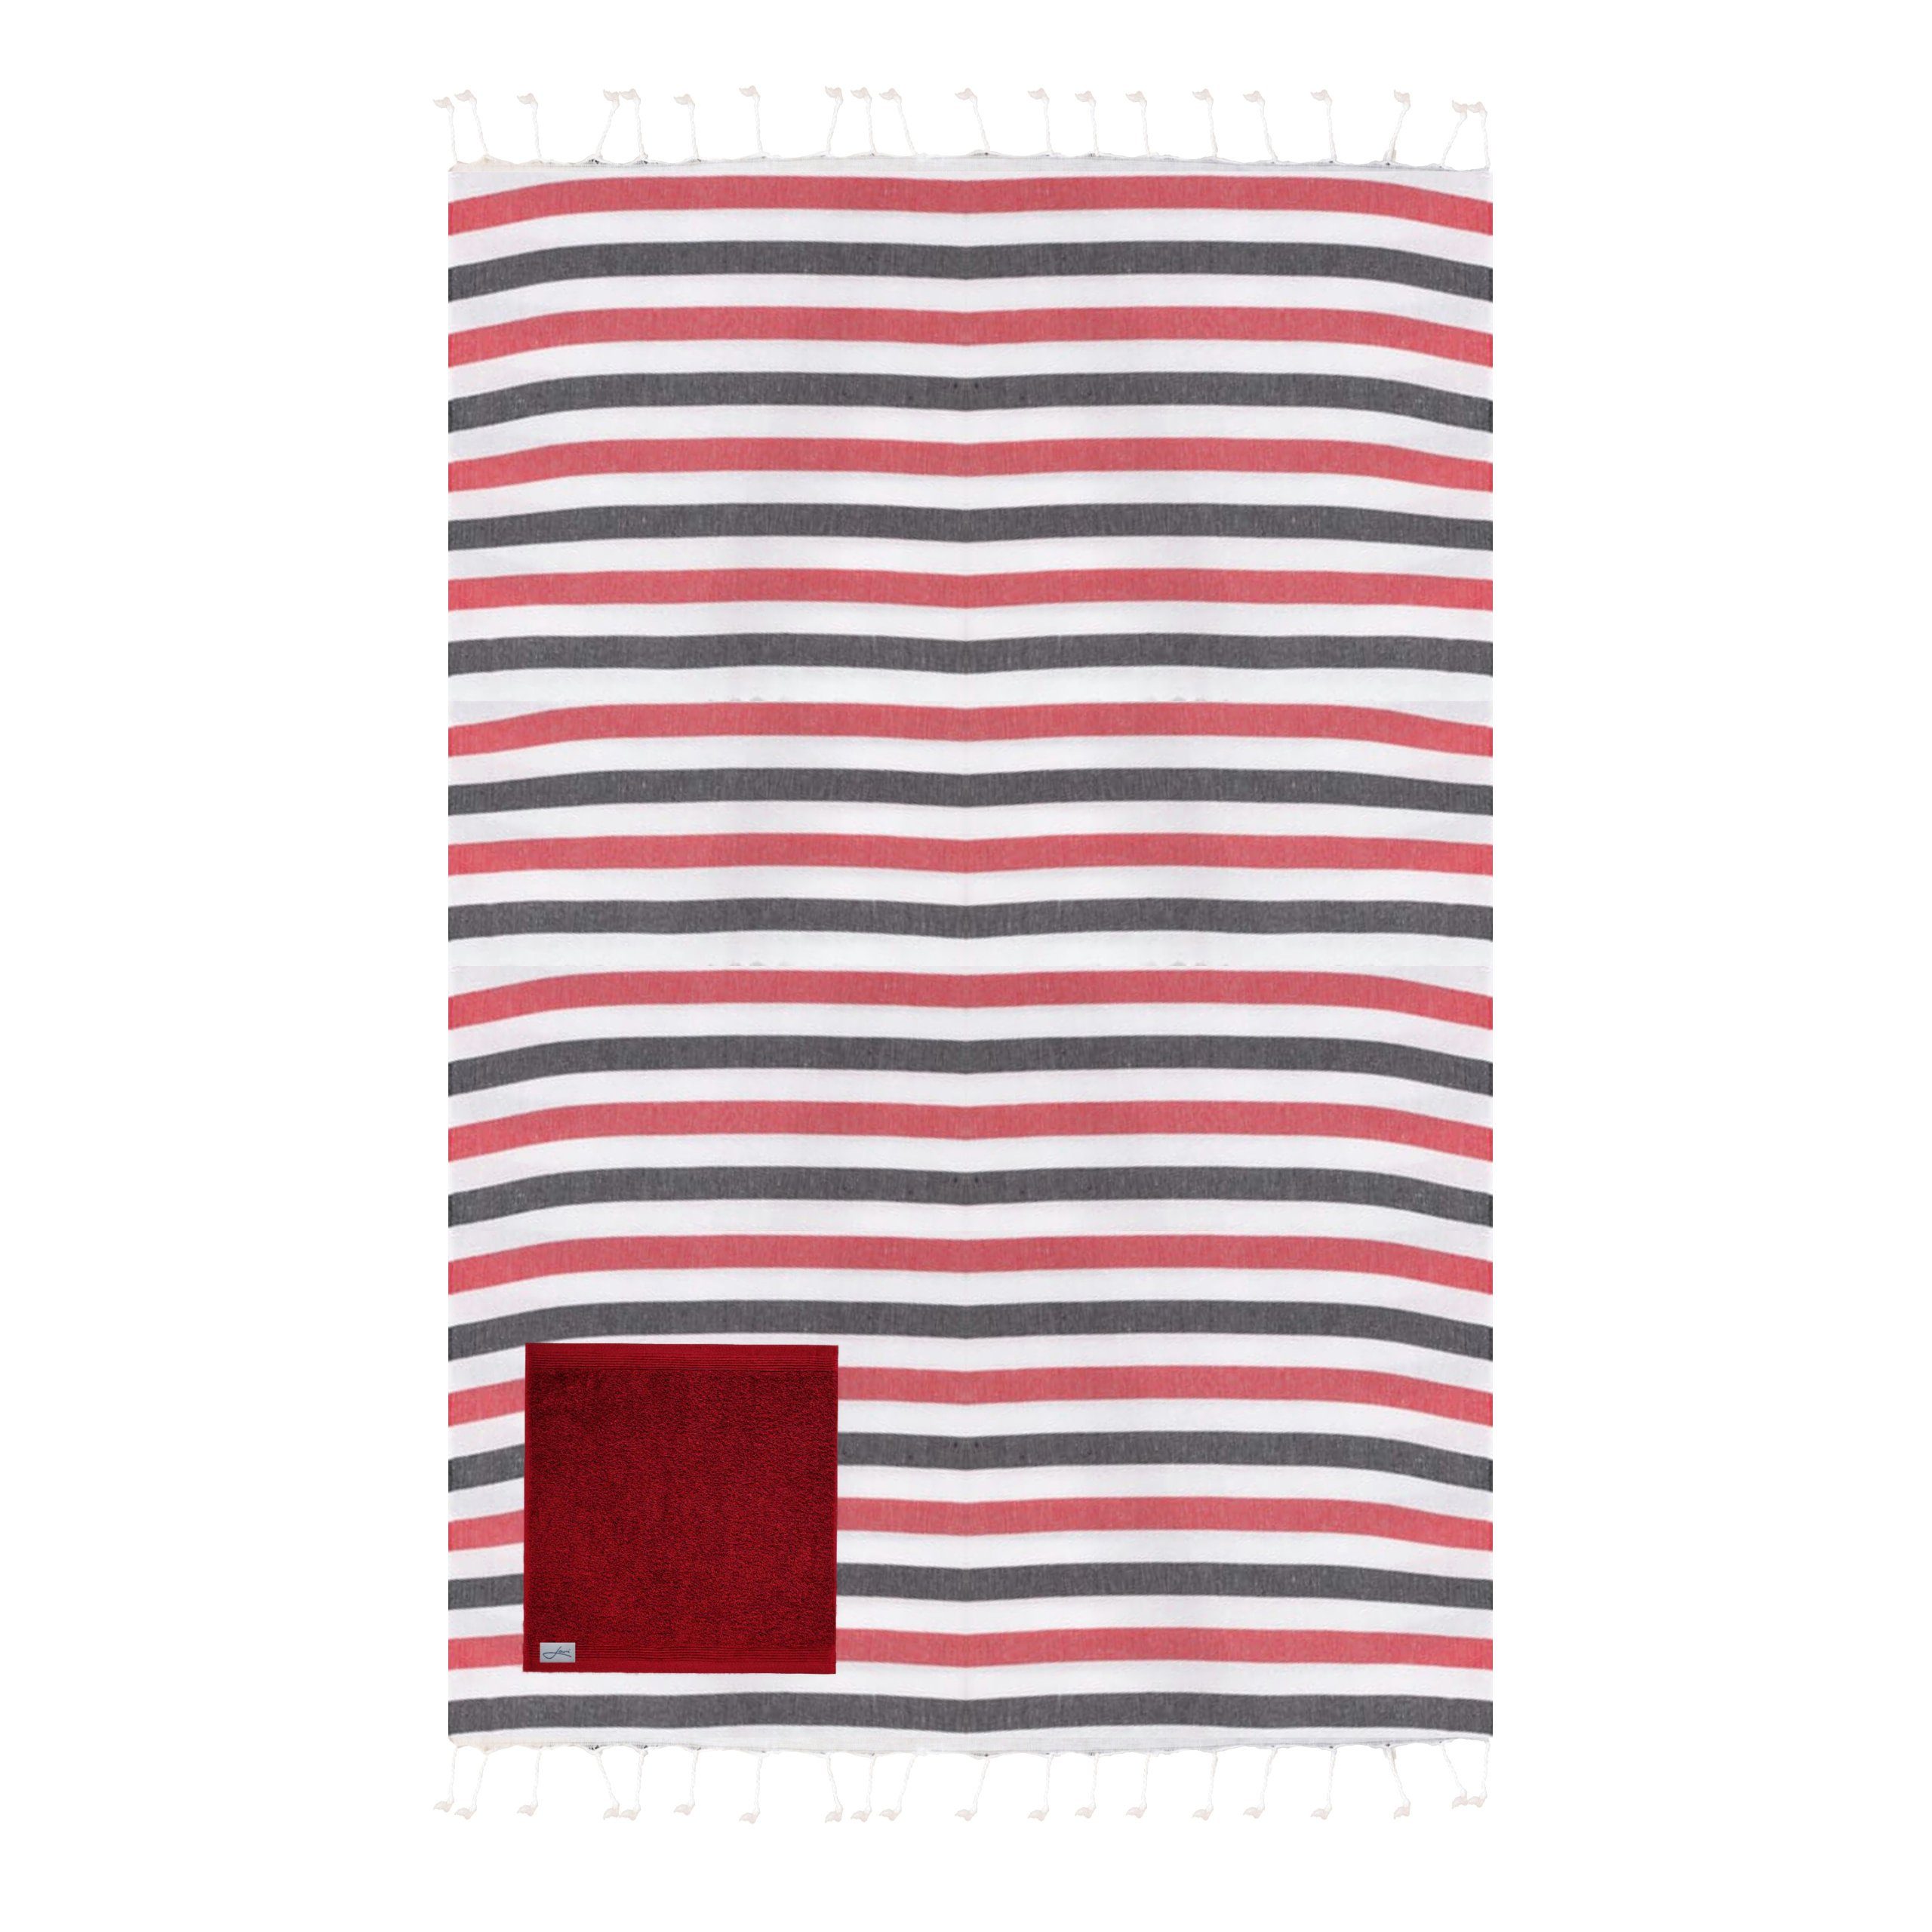 Lou-i Hamamtuch Strandtuch gestreift mit Tasche Hamamtuch, trocknet schnell rot-blau-weiß | Saunahandtücher